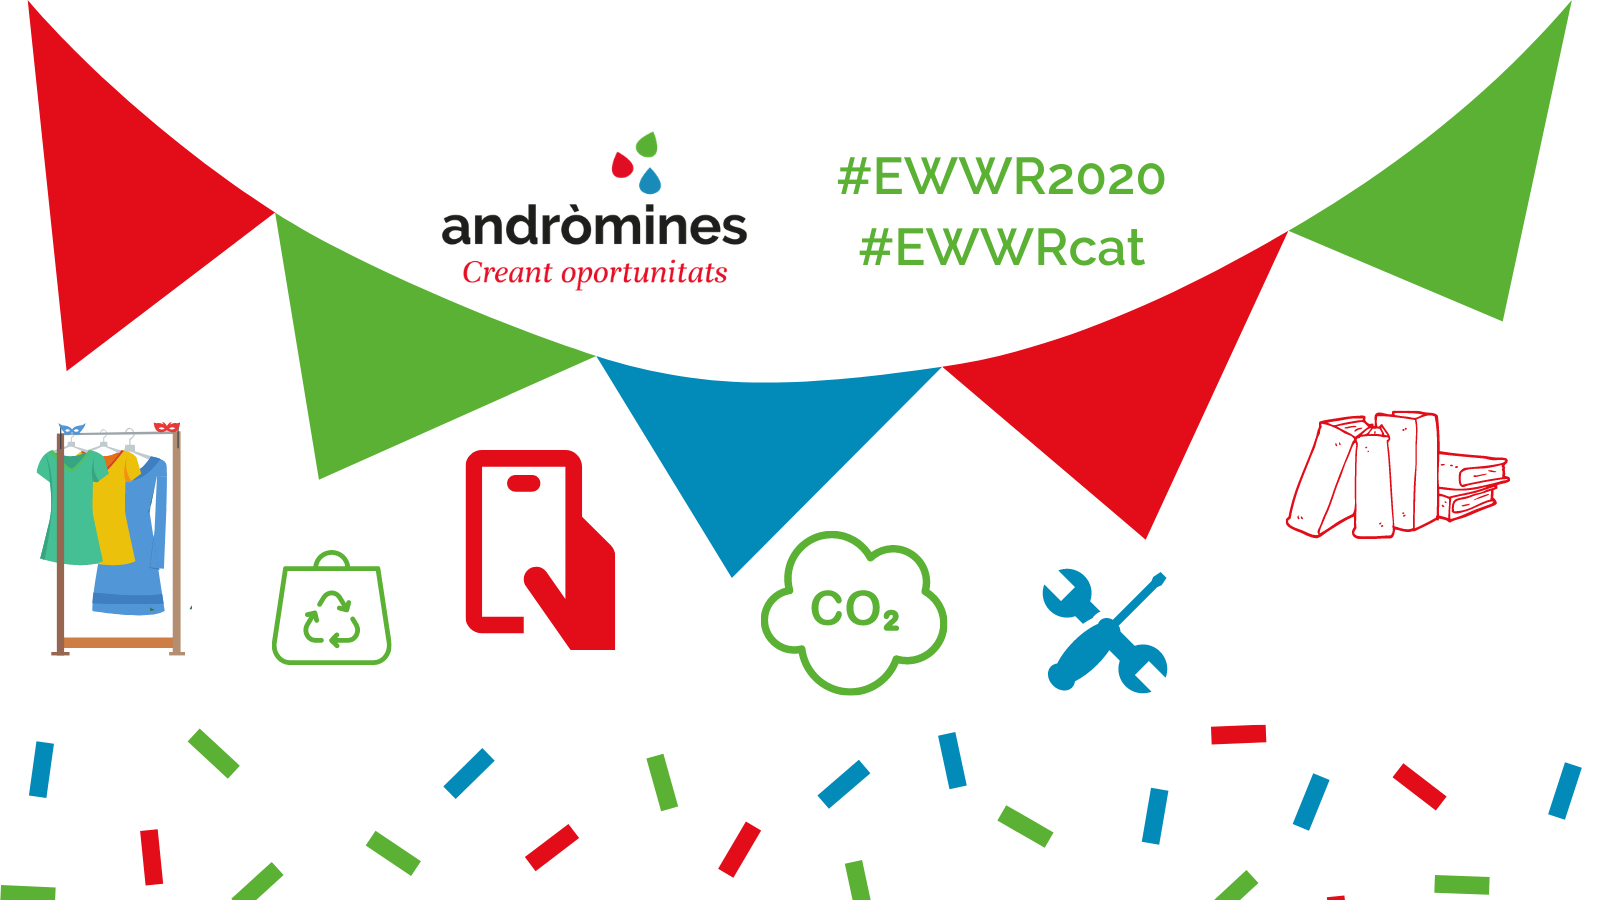 Setmana #EWWR2020 què no saps què és?